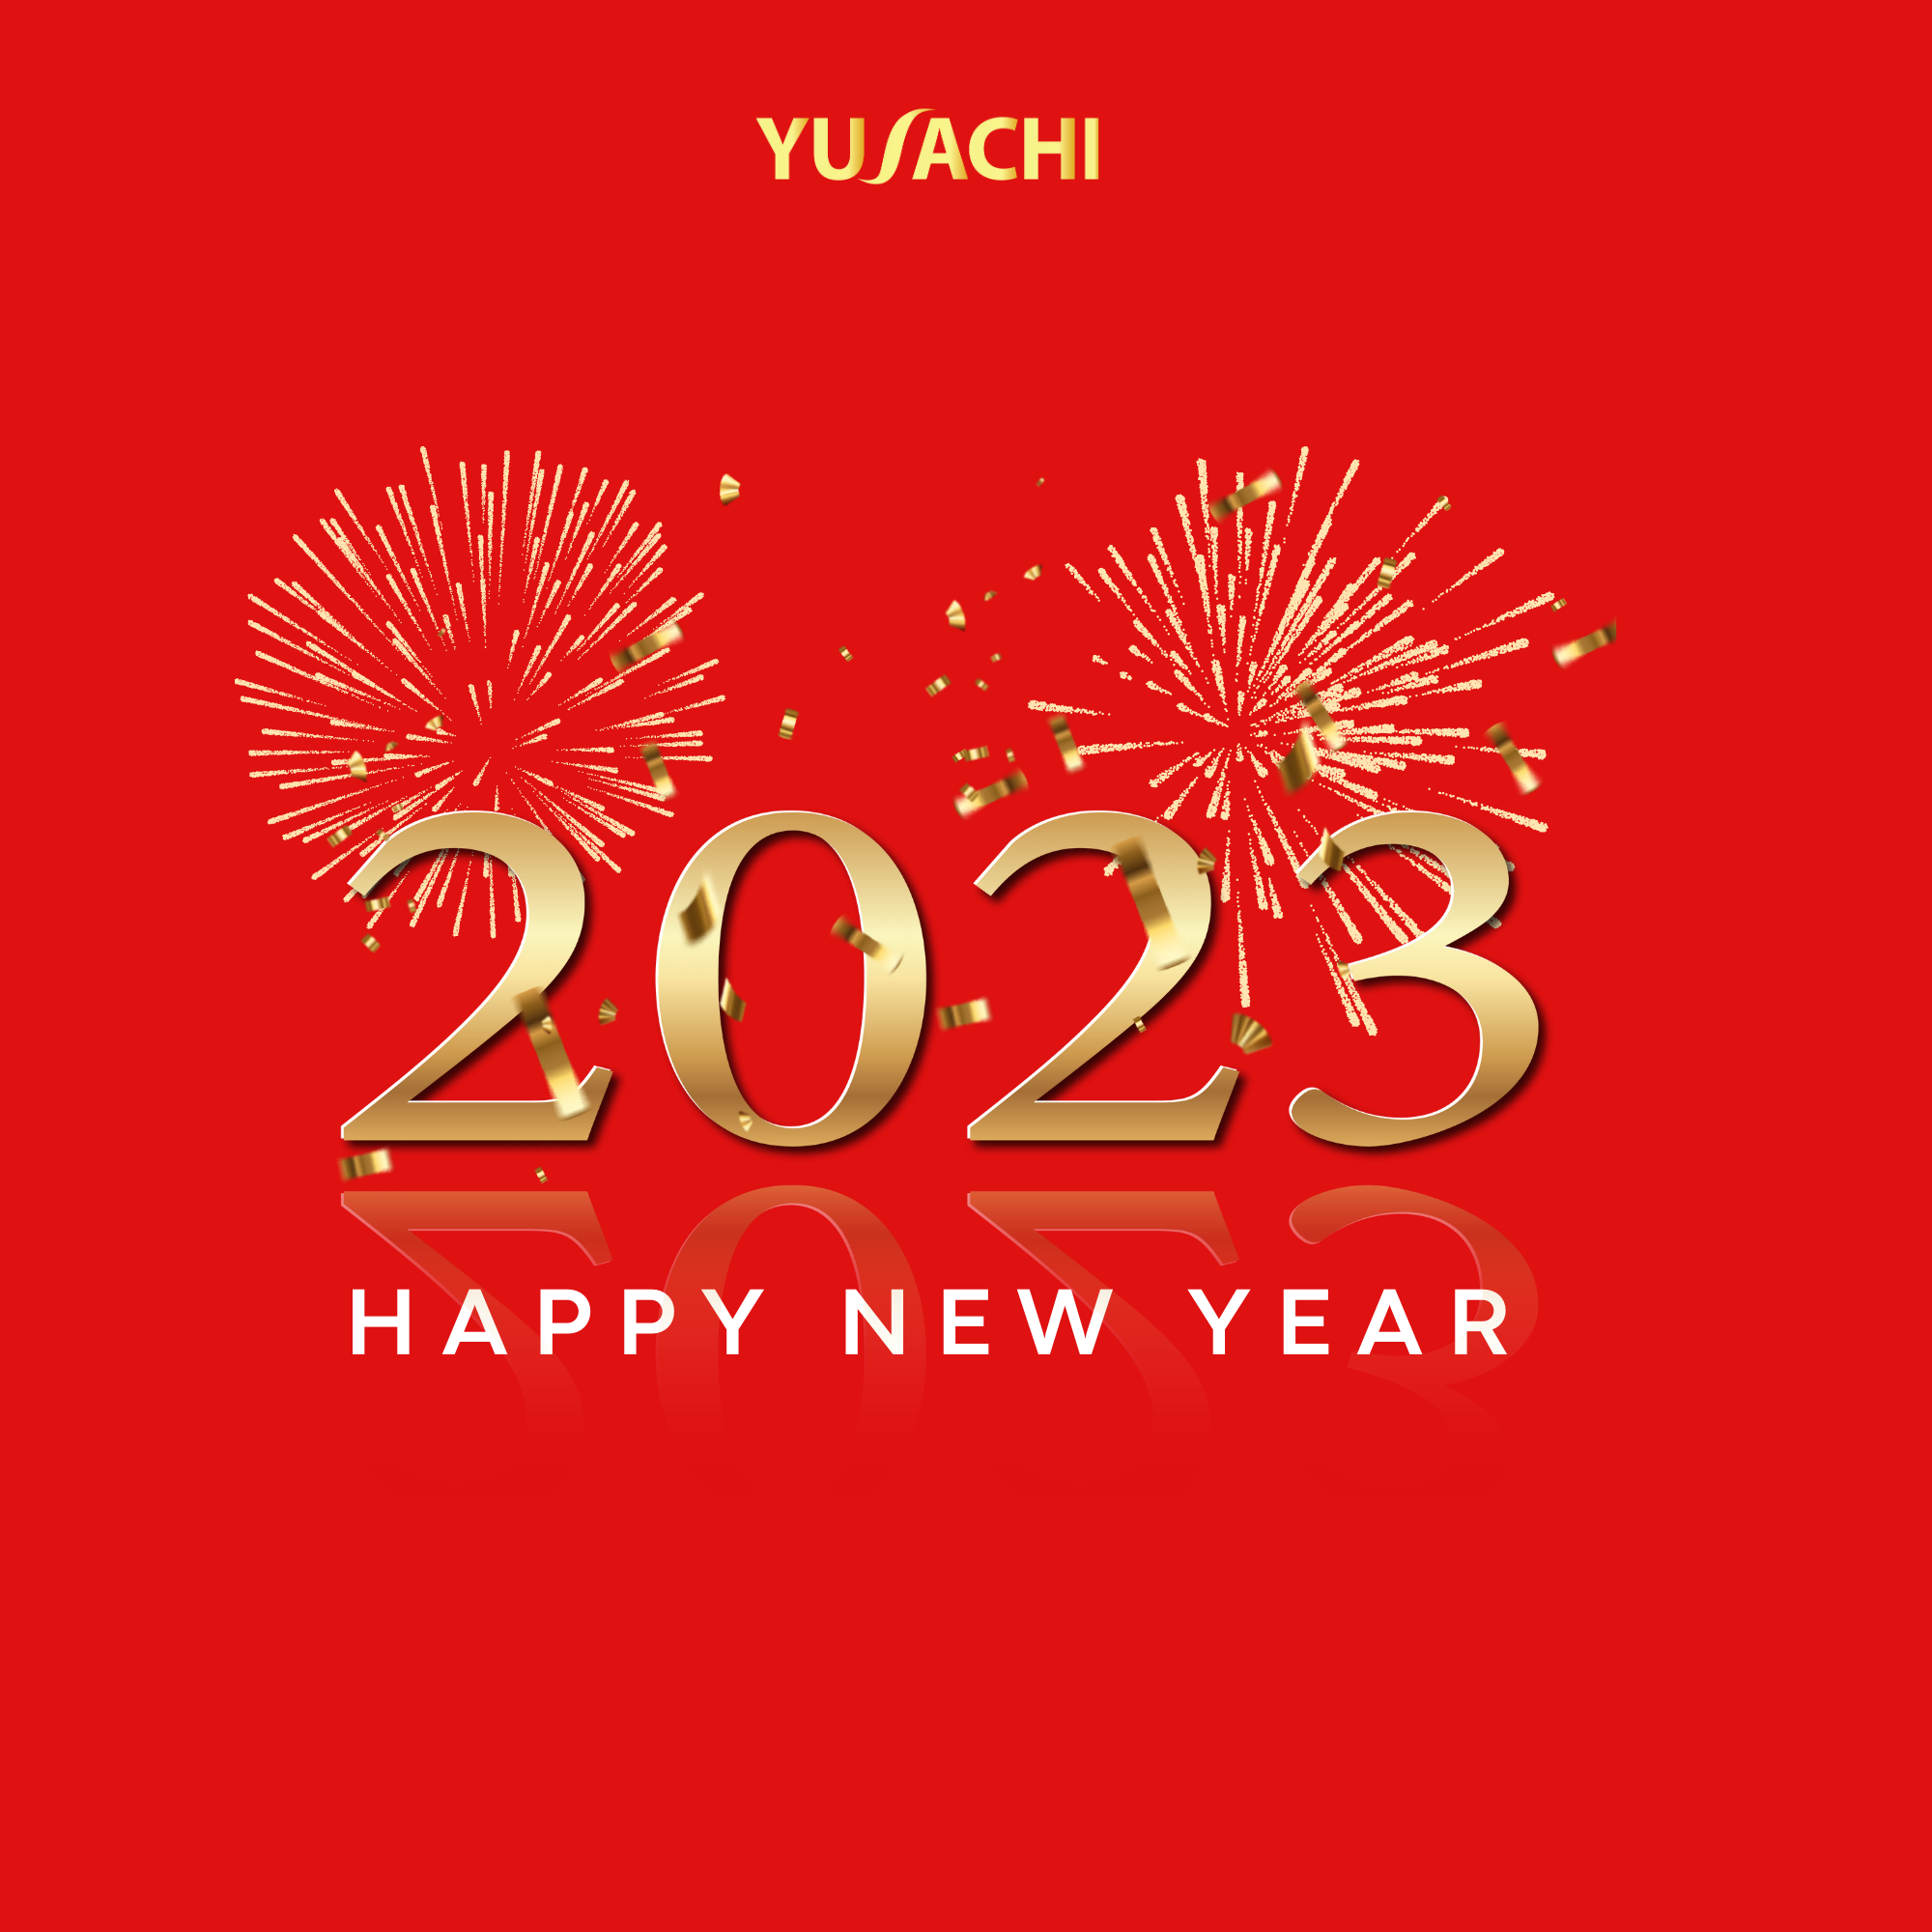 Yusachi chúc mừng năm mới